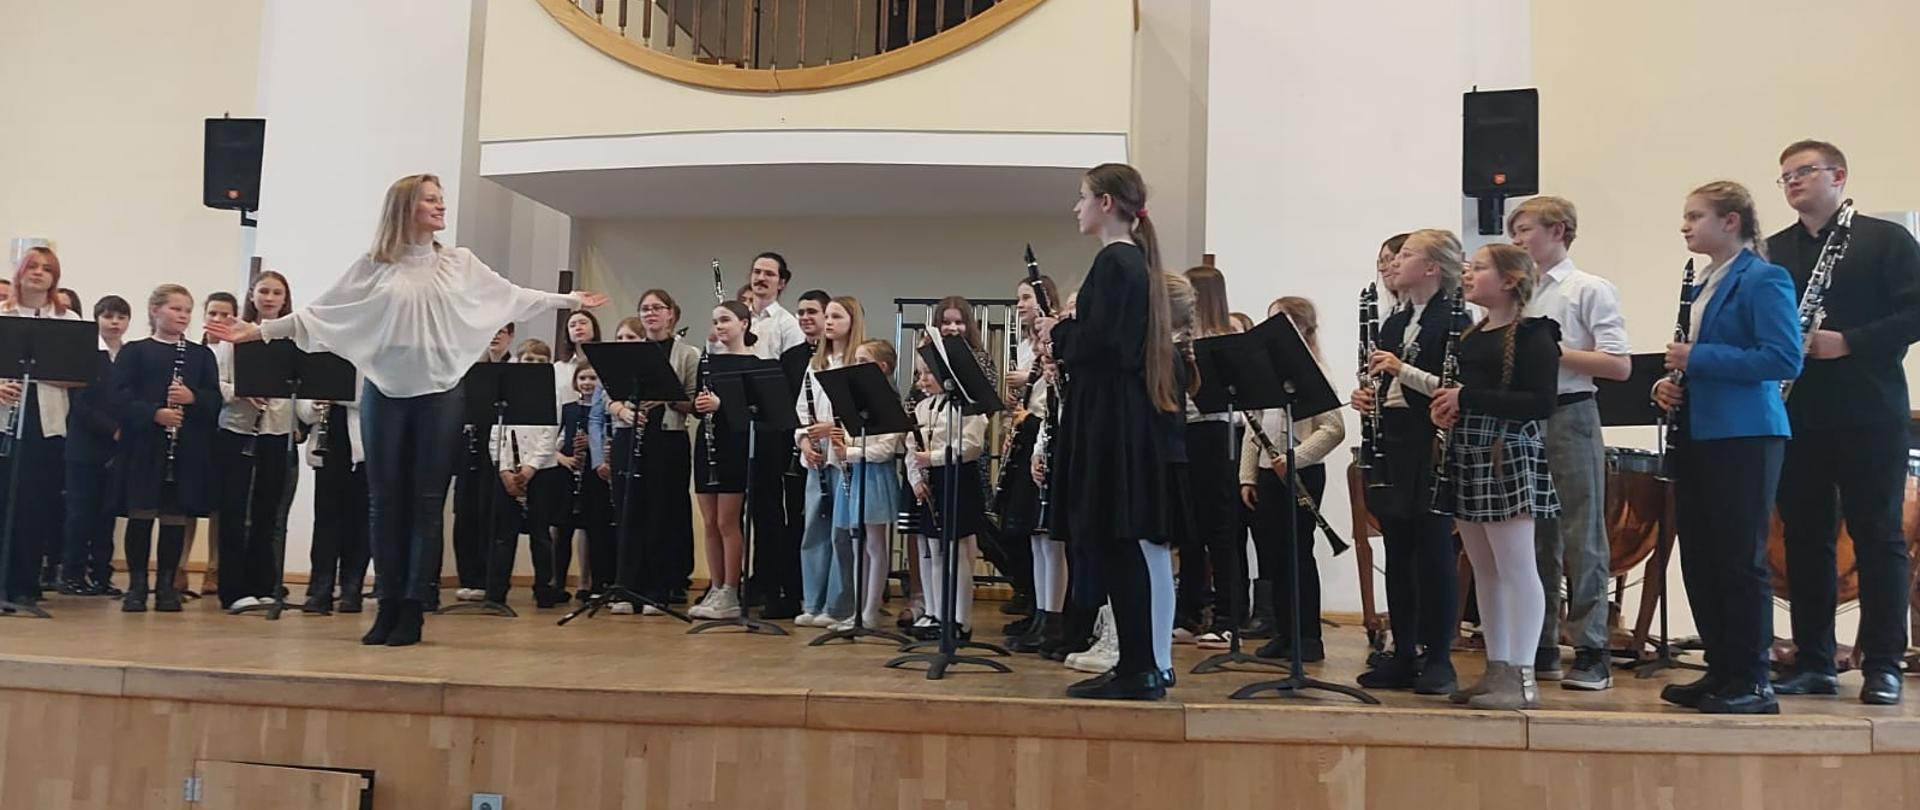 Na scenie w Akademii Muzycznej stoją wykonawcy koncertu klarnetowo - saksofonowego gotowi do ukłonu. Pozuje kilkadziesiąt dzieci i nauczycieli.